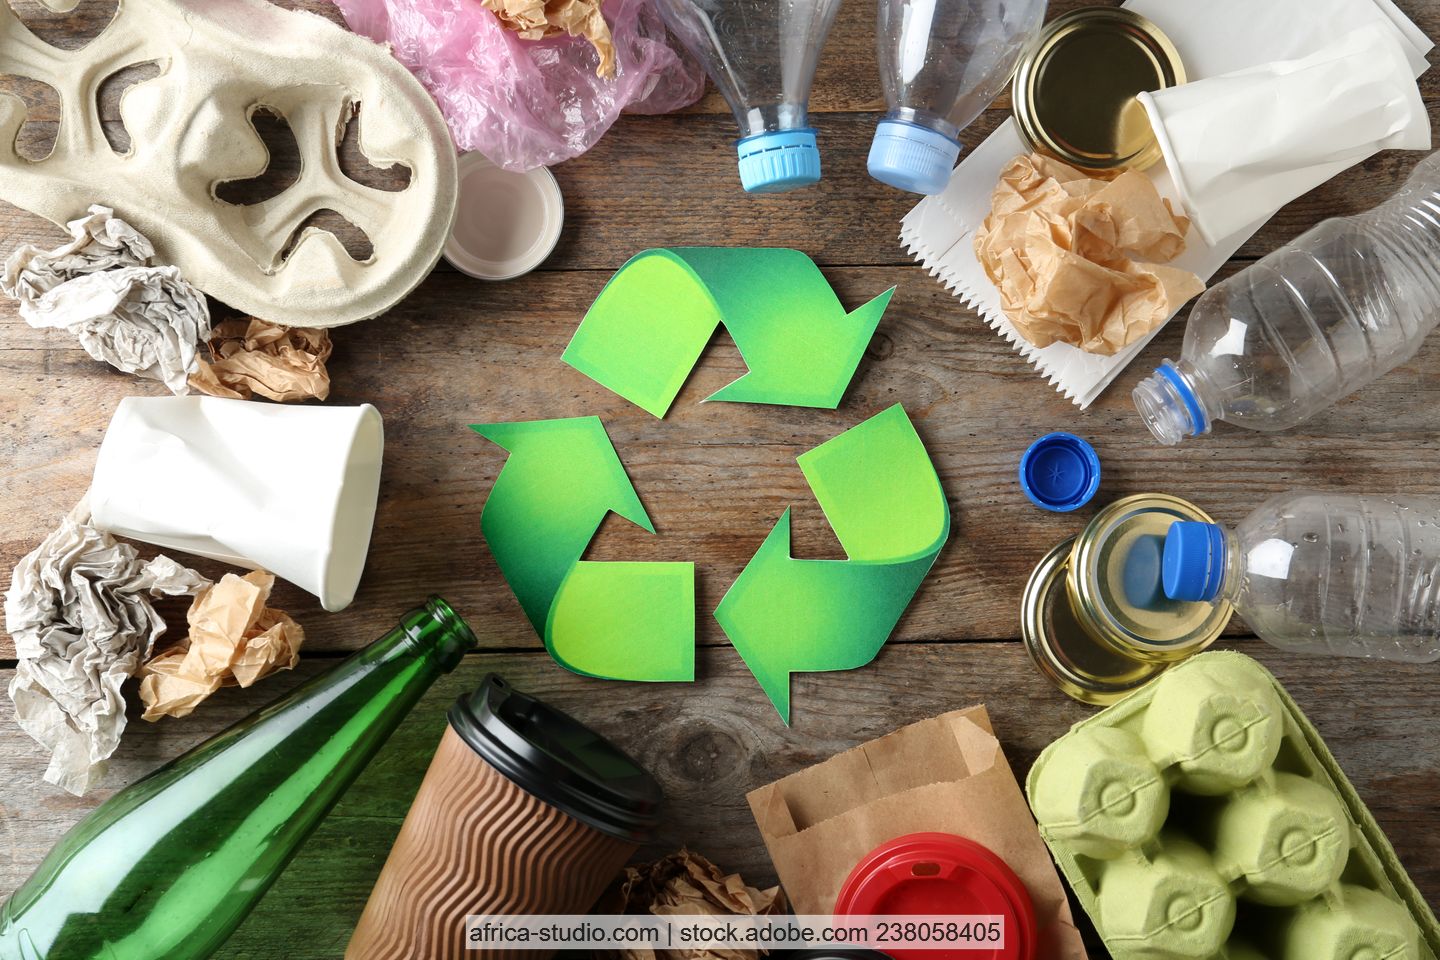 Verschiedene Verpackungen (Glas- und Kunststoffflaschen, Becher, Eierkarton, Metallverschlüsse von Gläsern) auf einer Holzfläche um ein grünes Recyclingsymbol herum gelegt.